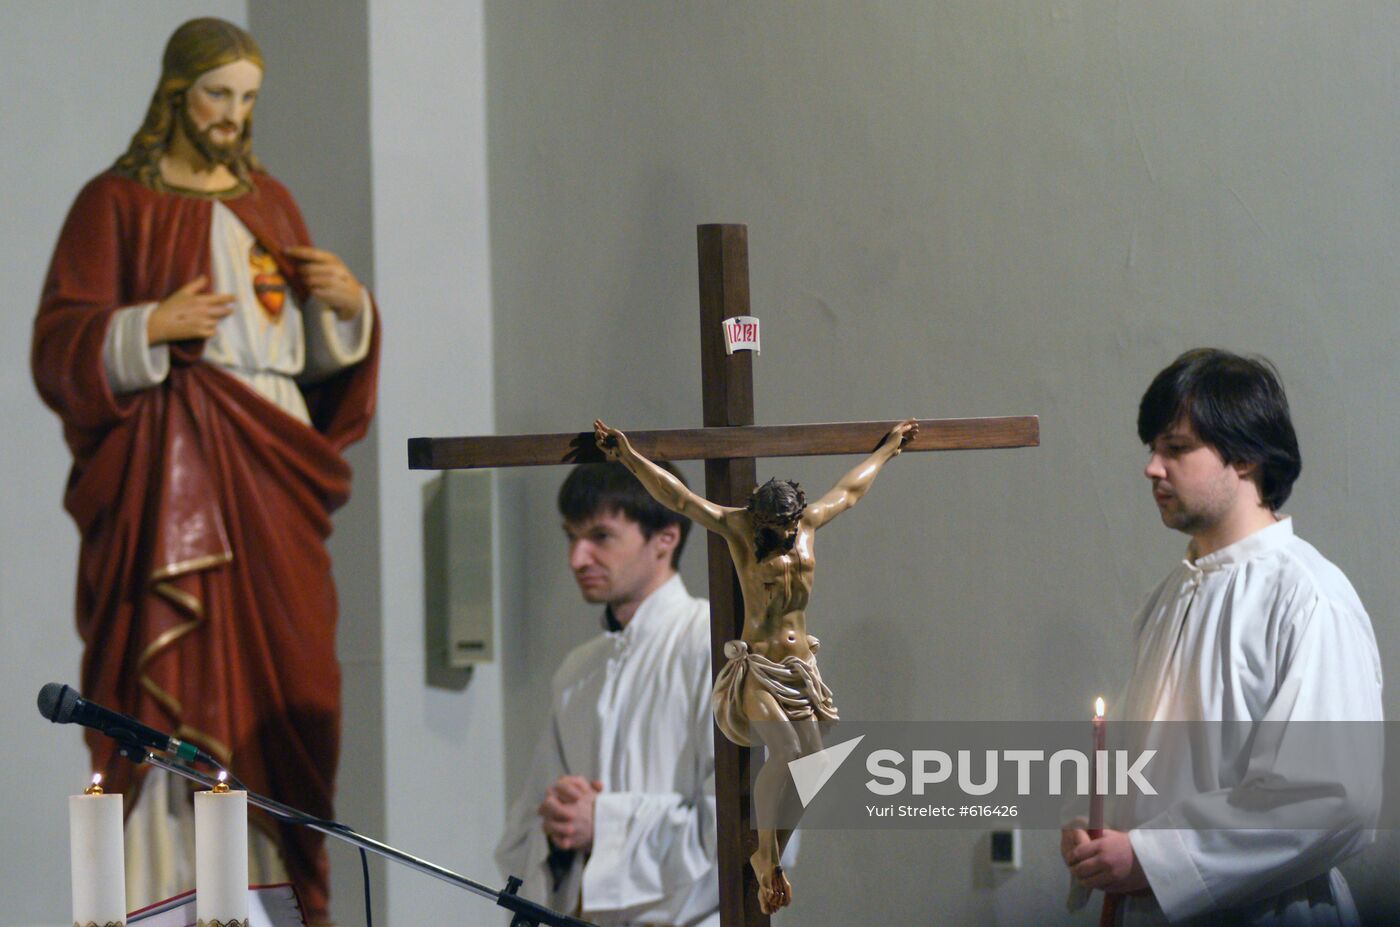 Celebration of Catholic Easter in Samara